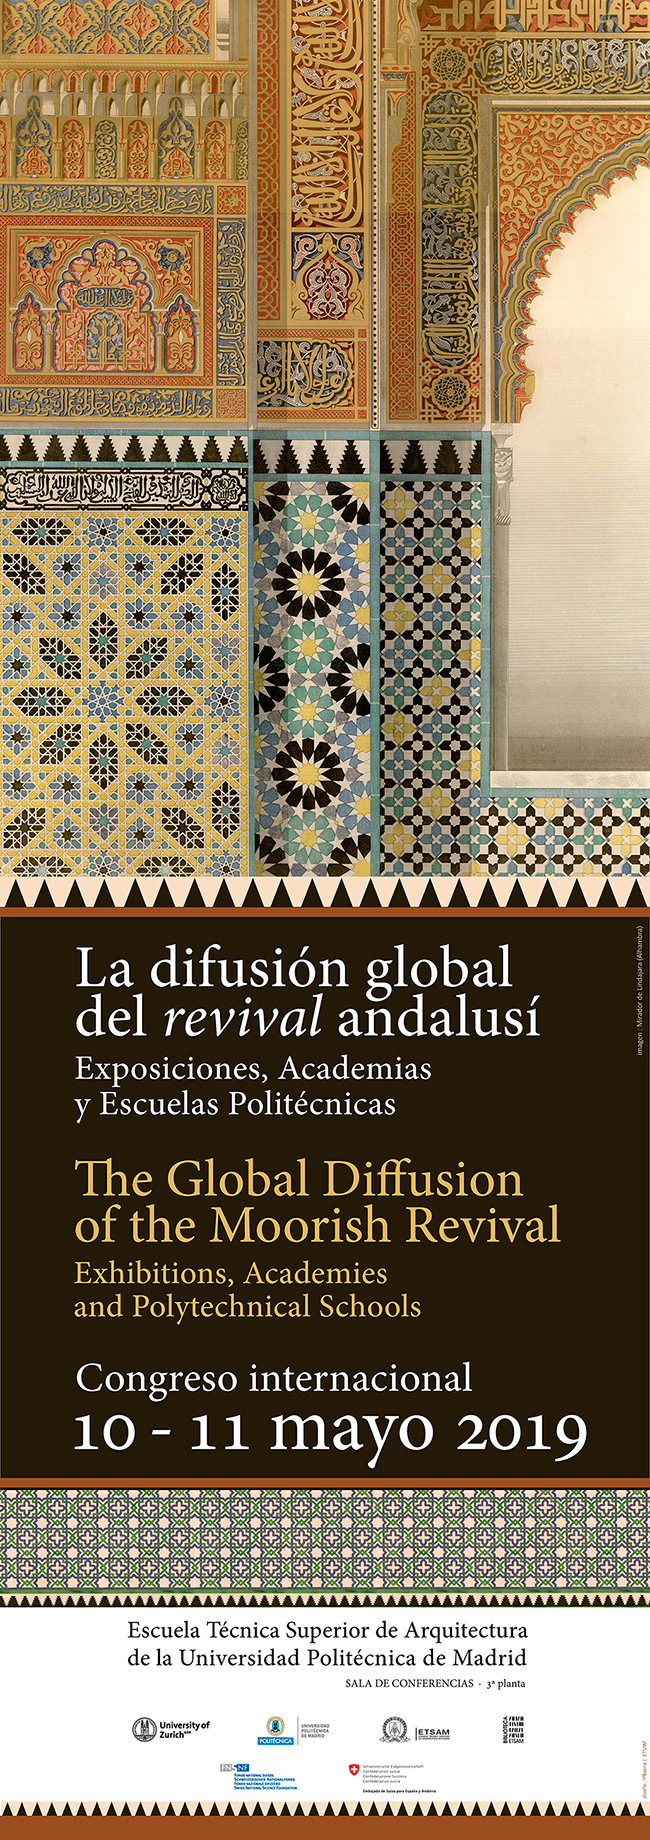 La difusión global del revival andalusí